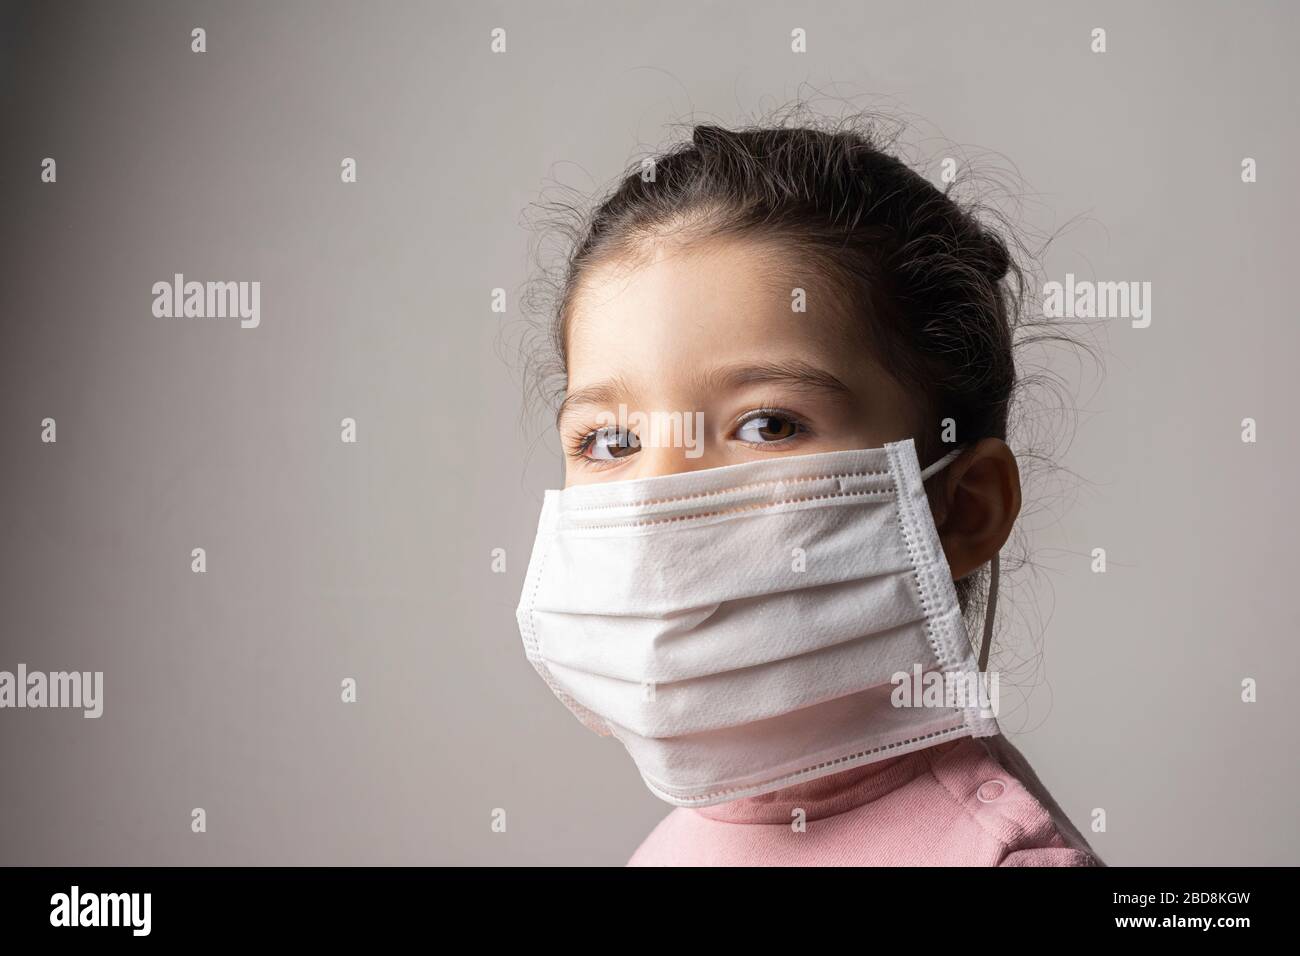 Kleines Mädchen mit Maske zum Schutz vor epidemischem Coronavirus, Coronavirus-Ausbruch und Luftverschmutzungskonzept Stockfoto